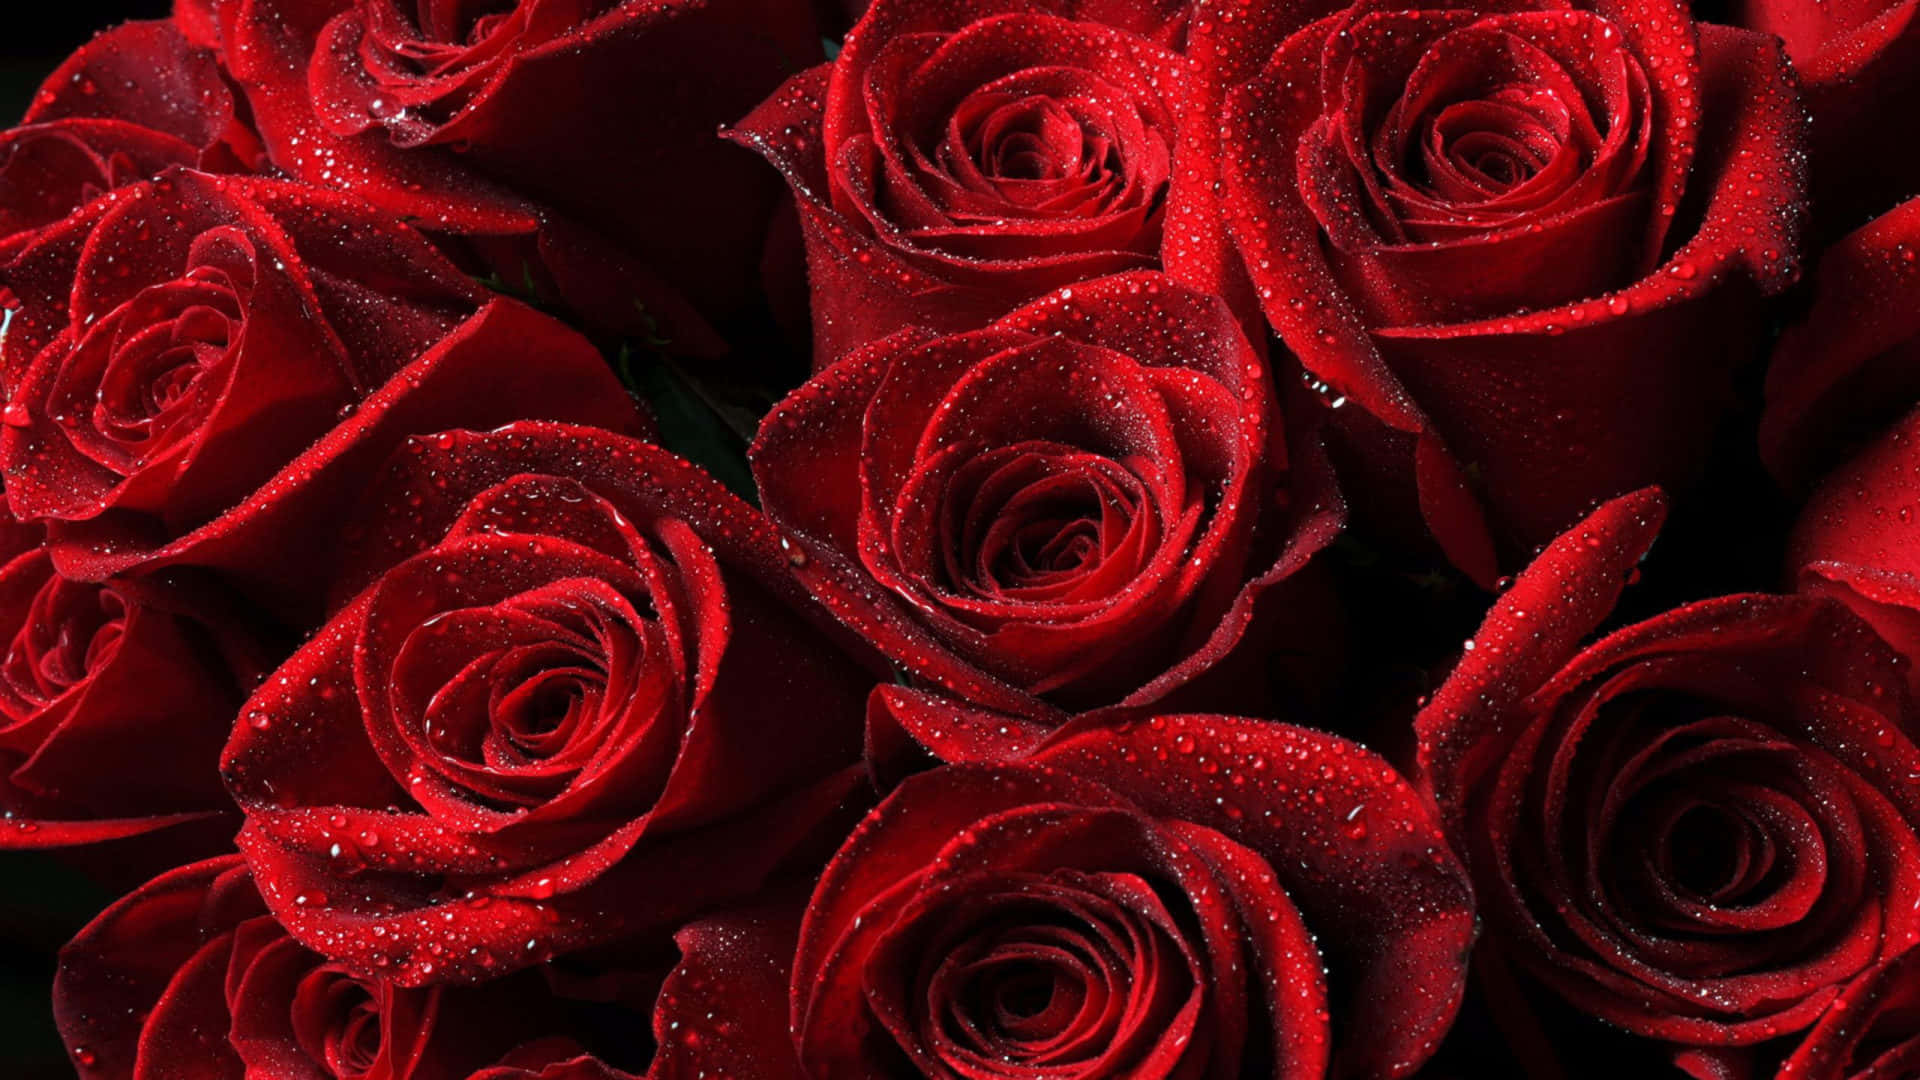 Einstrauß Roter Rosen Wallpaper